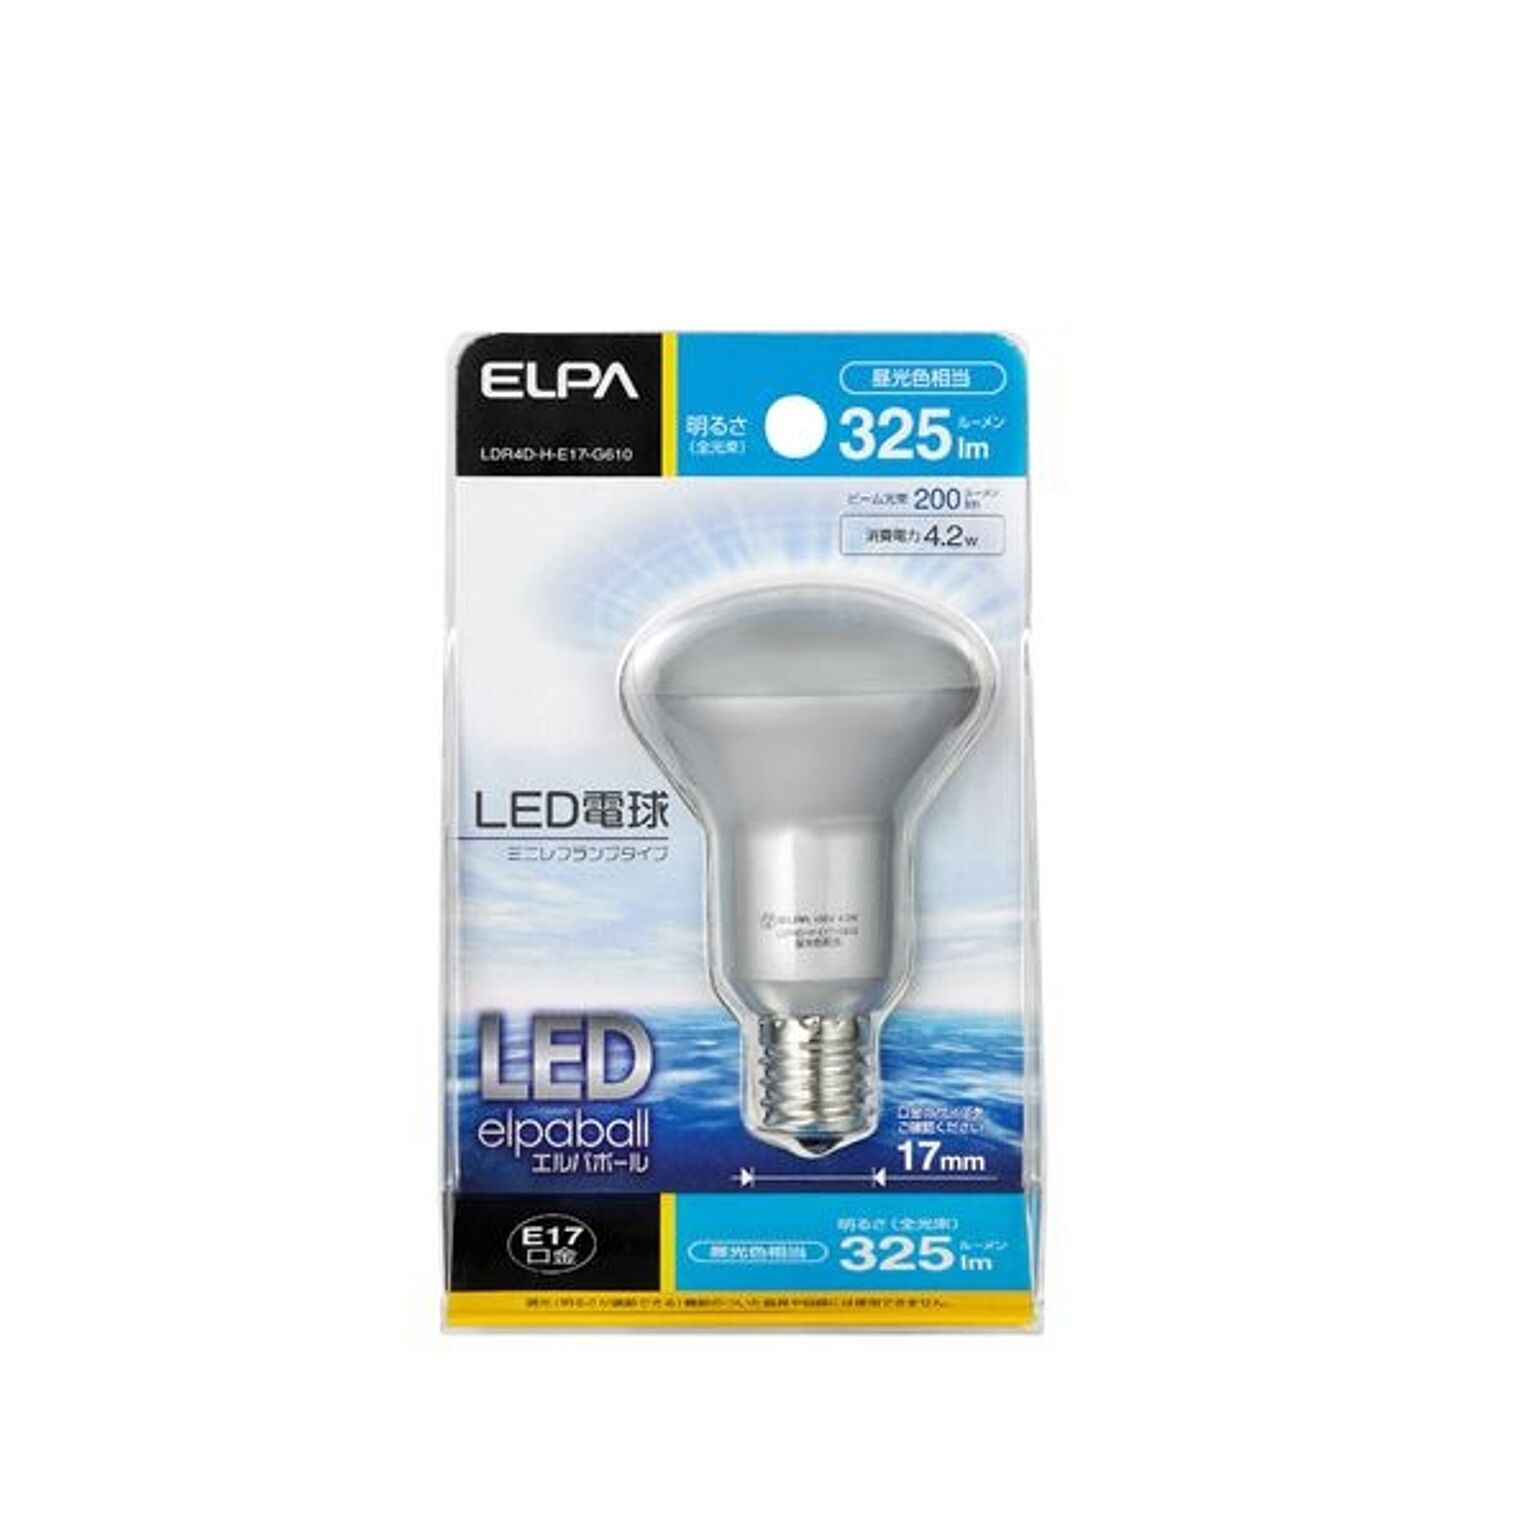 （まとめ） ELPA LED電球 ミニレフ球形 30W E17 昼光色 LDR4D-H-E17-G610 【×10セット】